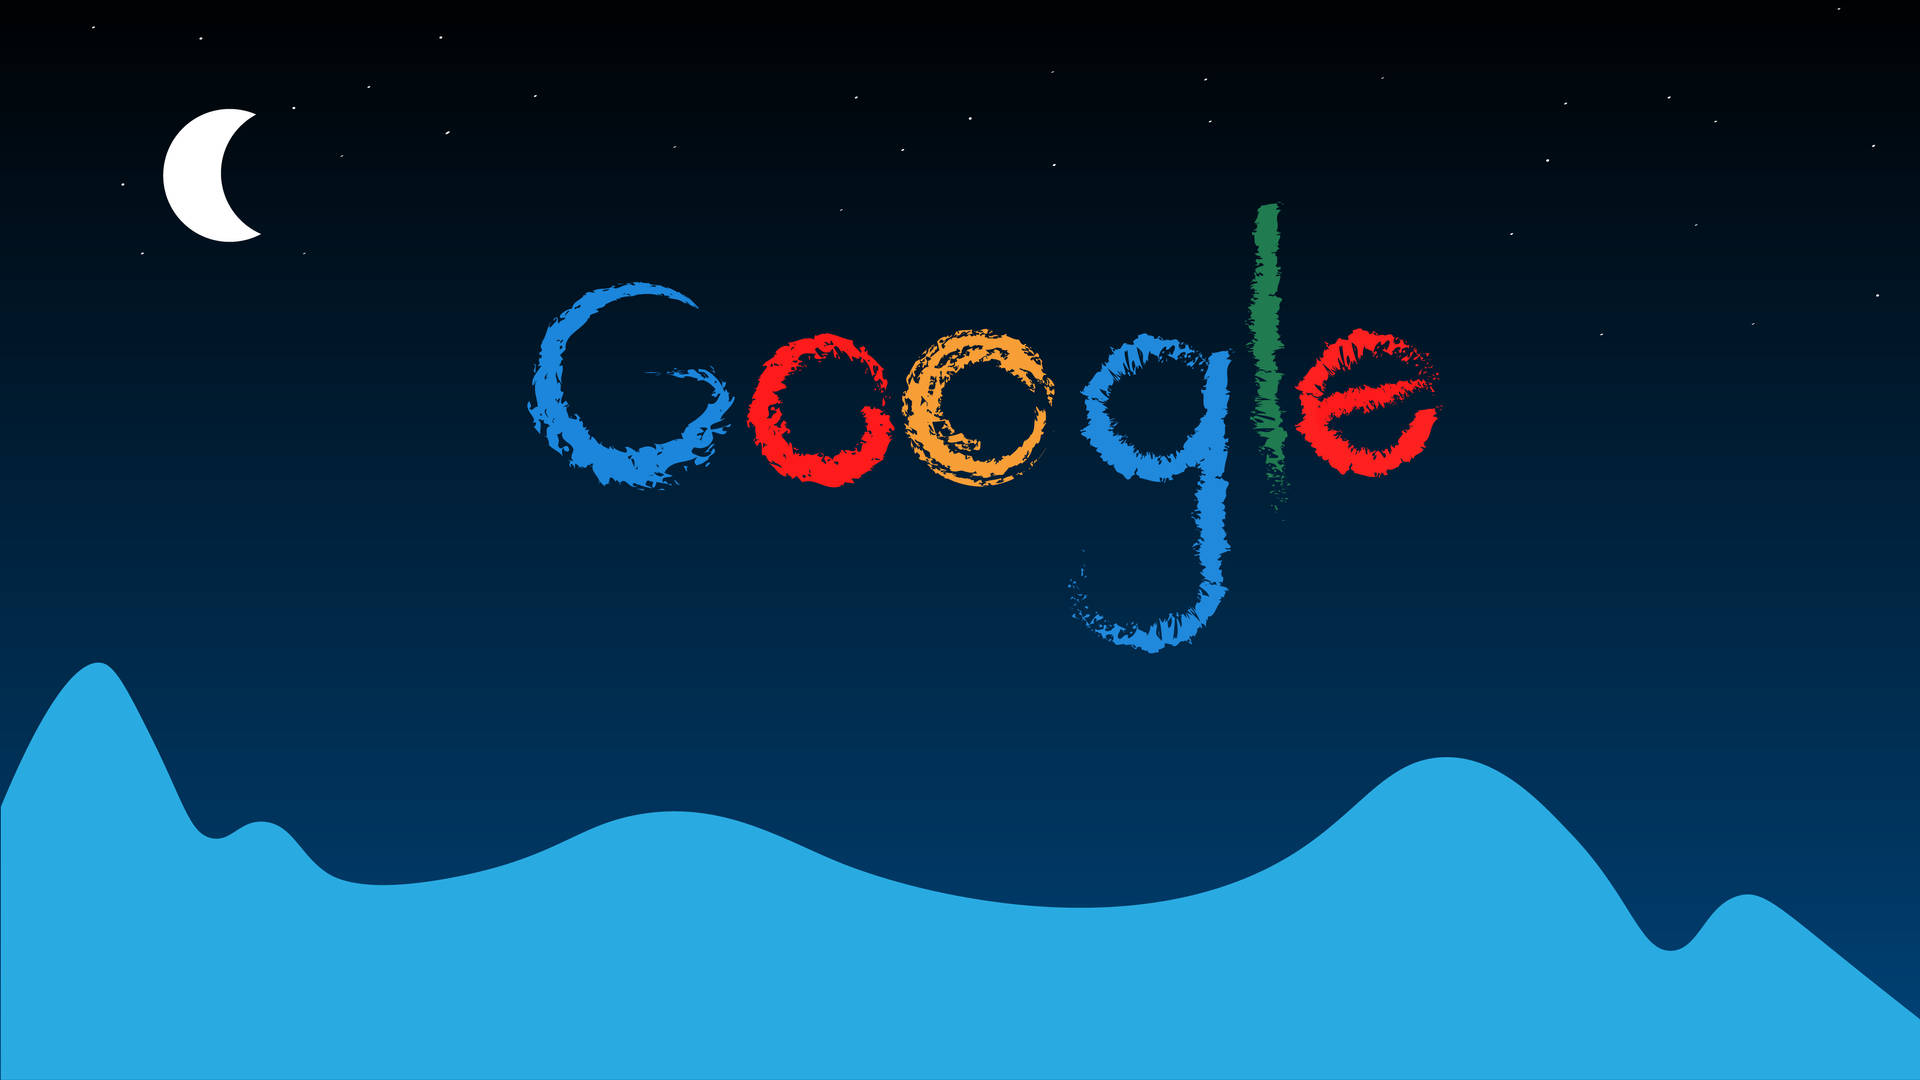 Googlestjärnklar Natt Wallpaper